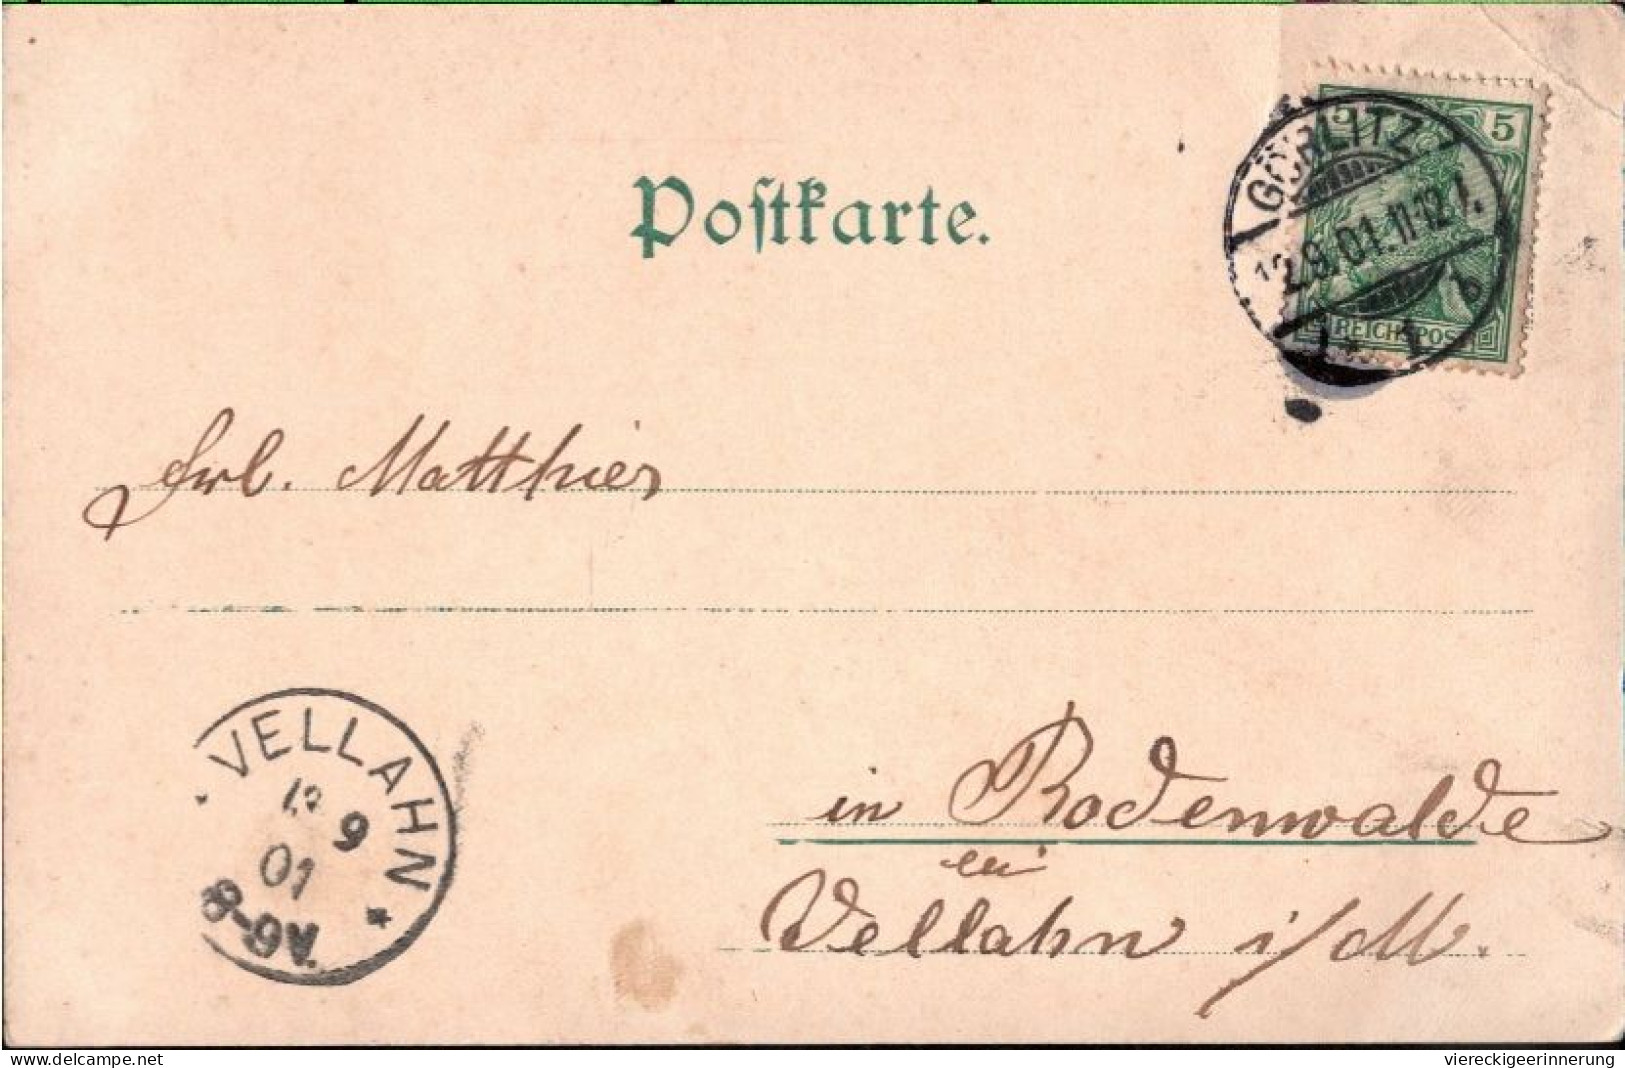 ! Alte Ansichtskarte Aus Görlitz, 1901 - Goerlitz